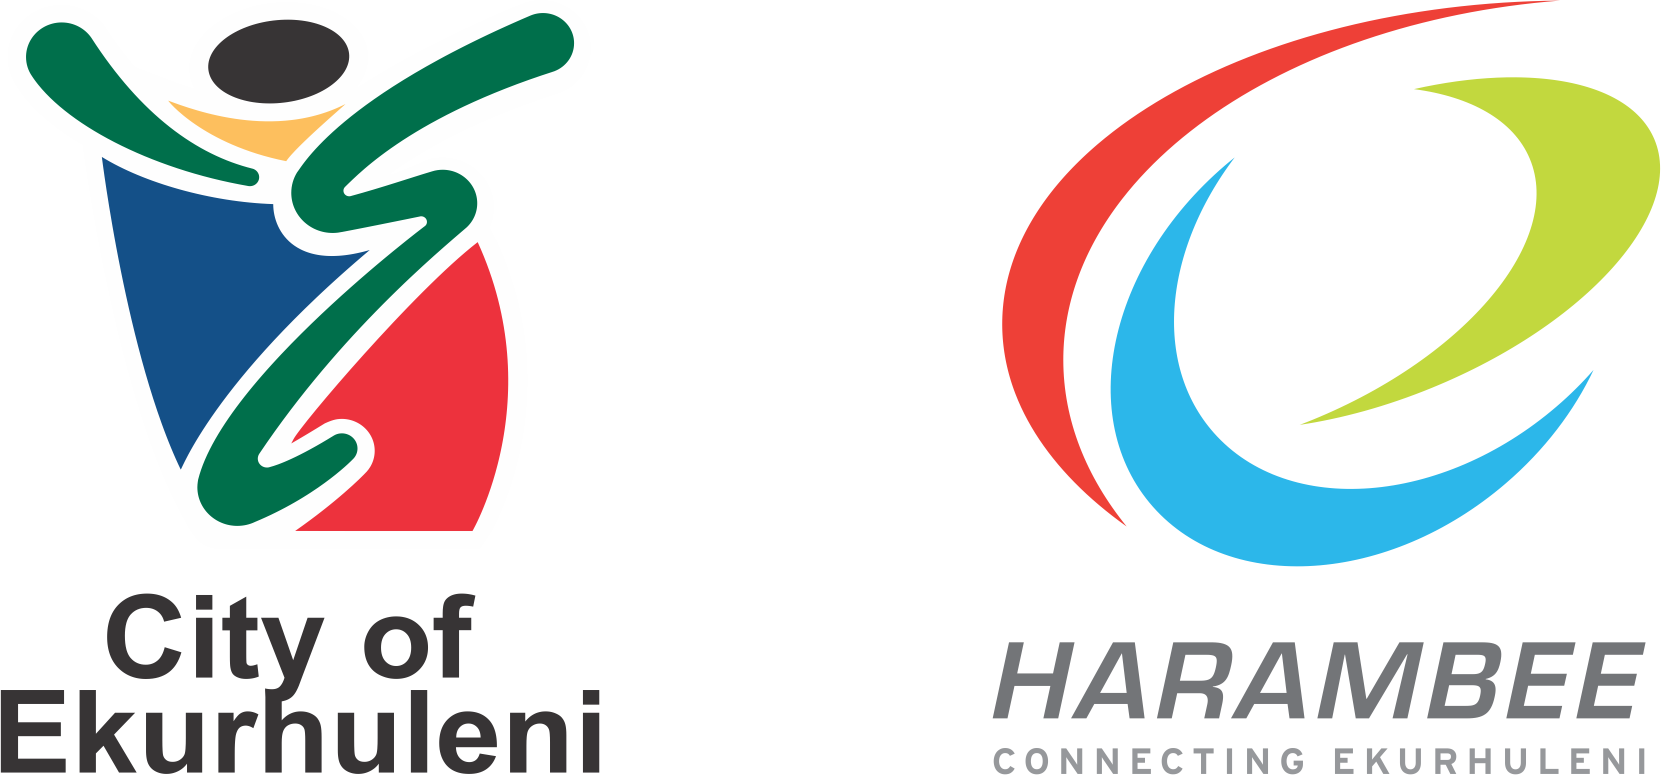 Ekuruhleni and Harambee logos